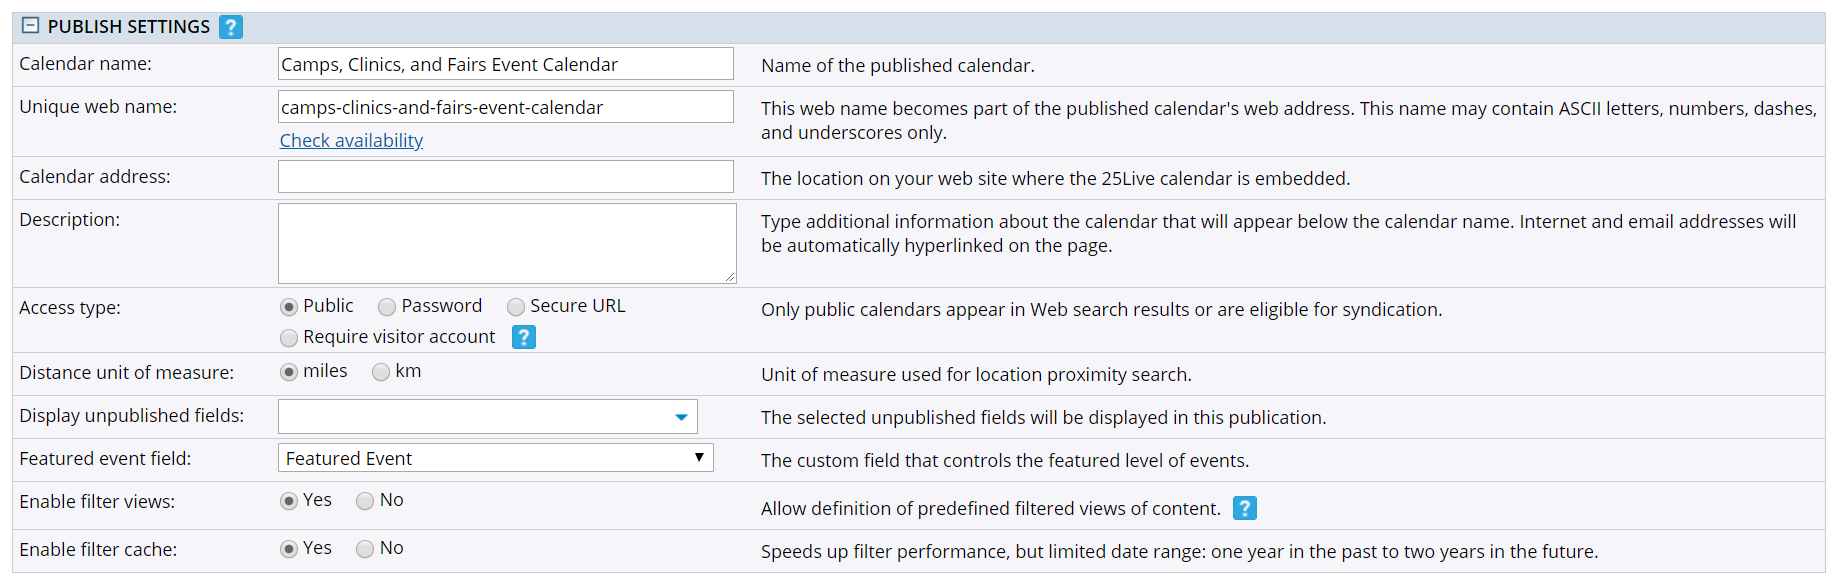 Publish settings fields